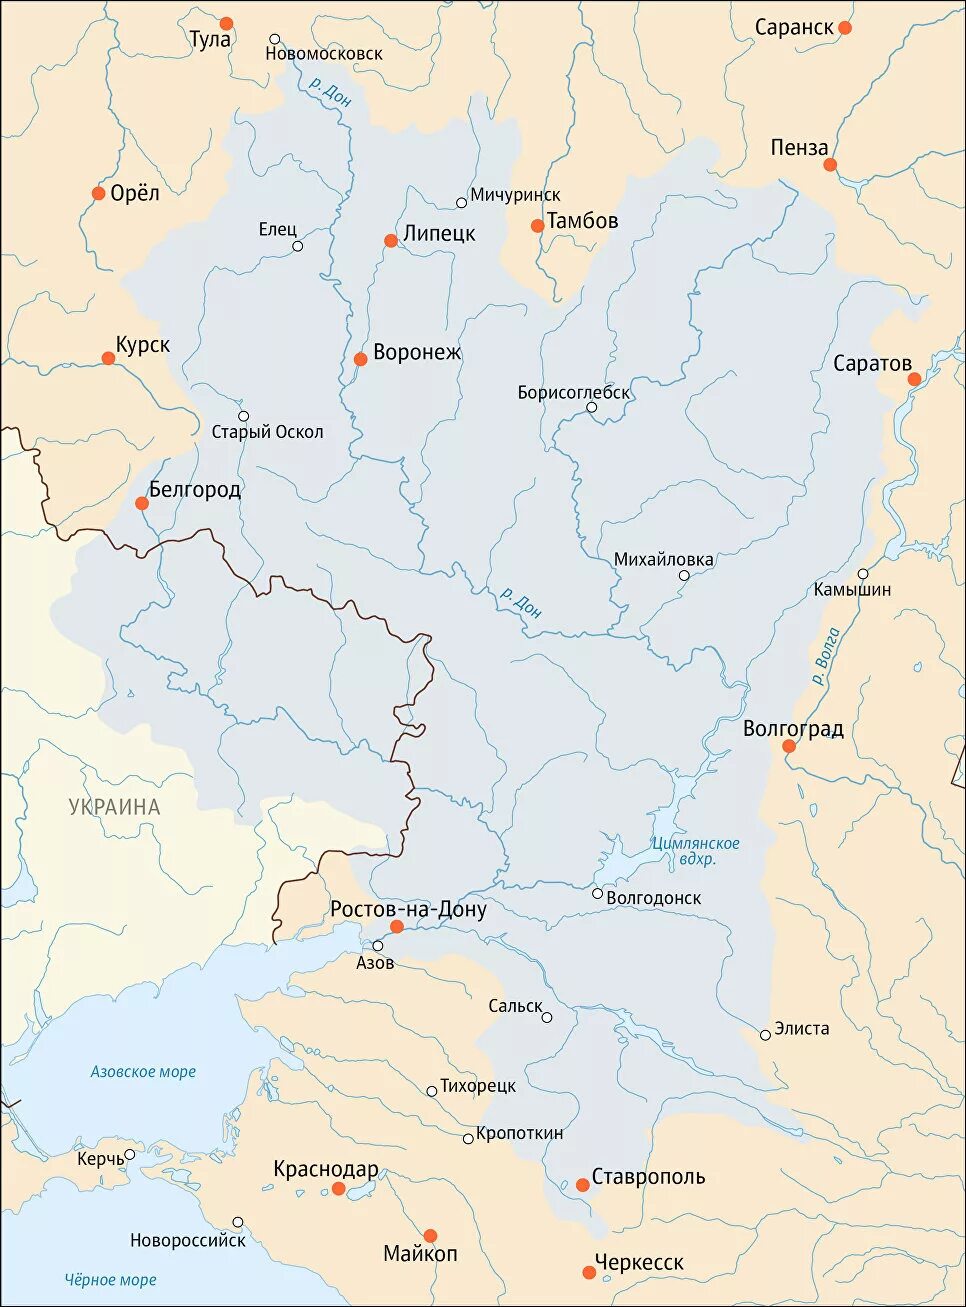 Нижний дон на карте. Река Дон на карте. Река Дон на карте от истока до устья. Бассейн реки Дон на карте России. Бассейн реки Дон.